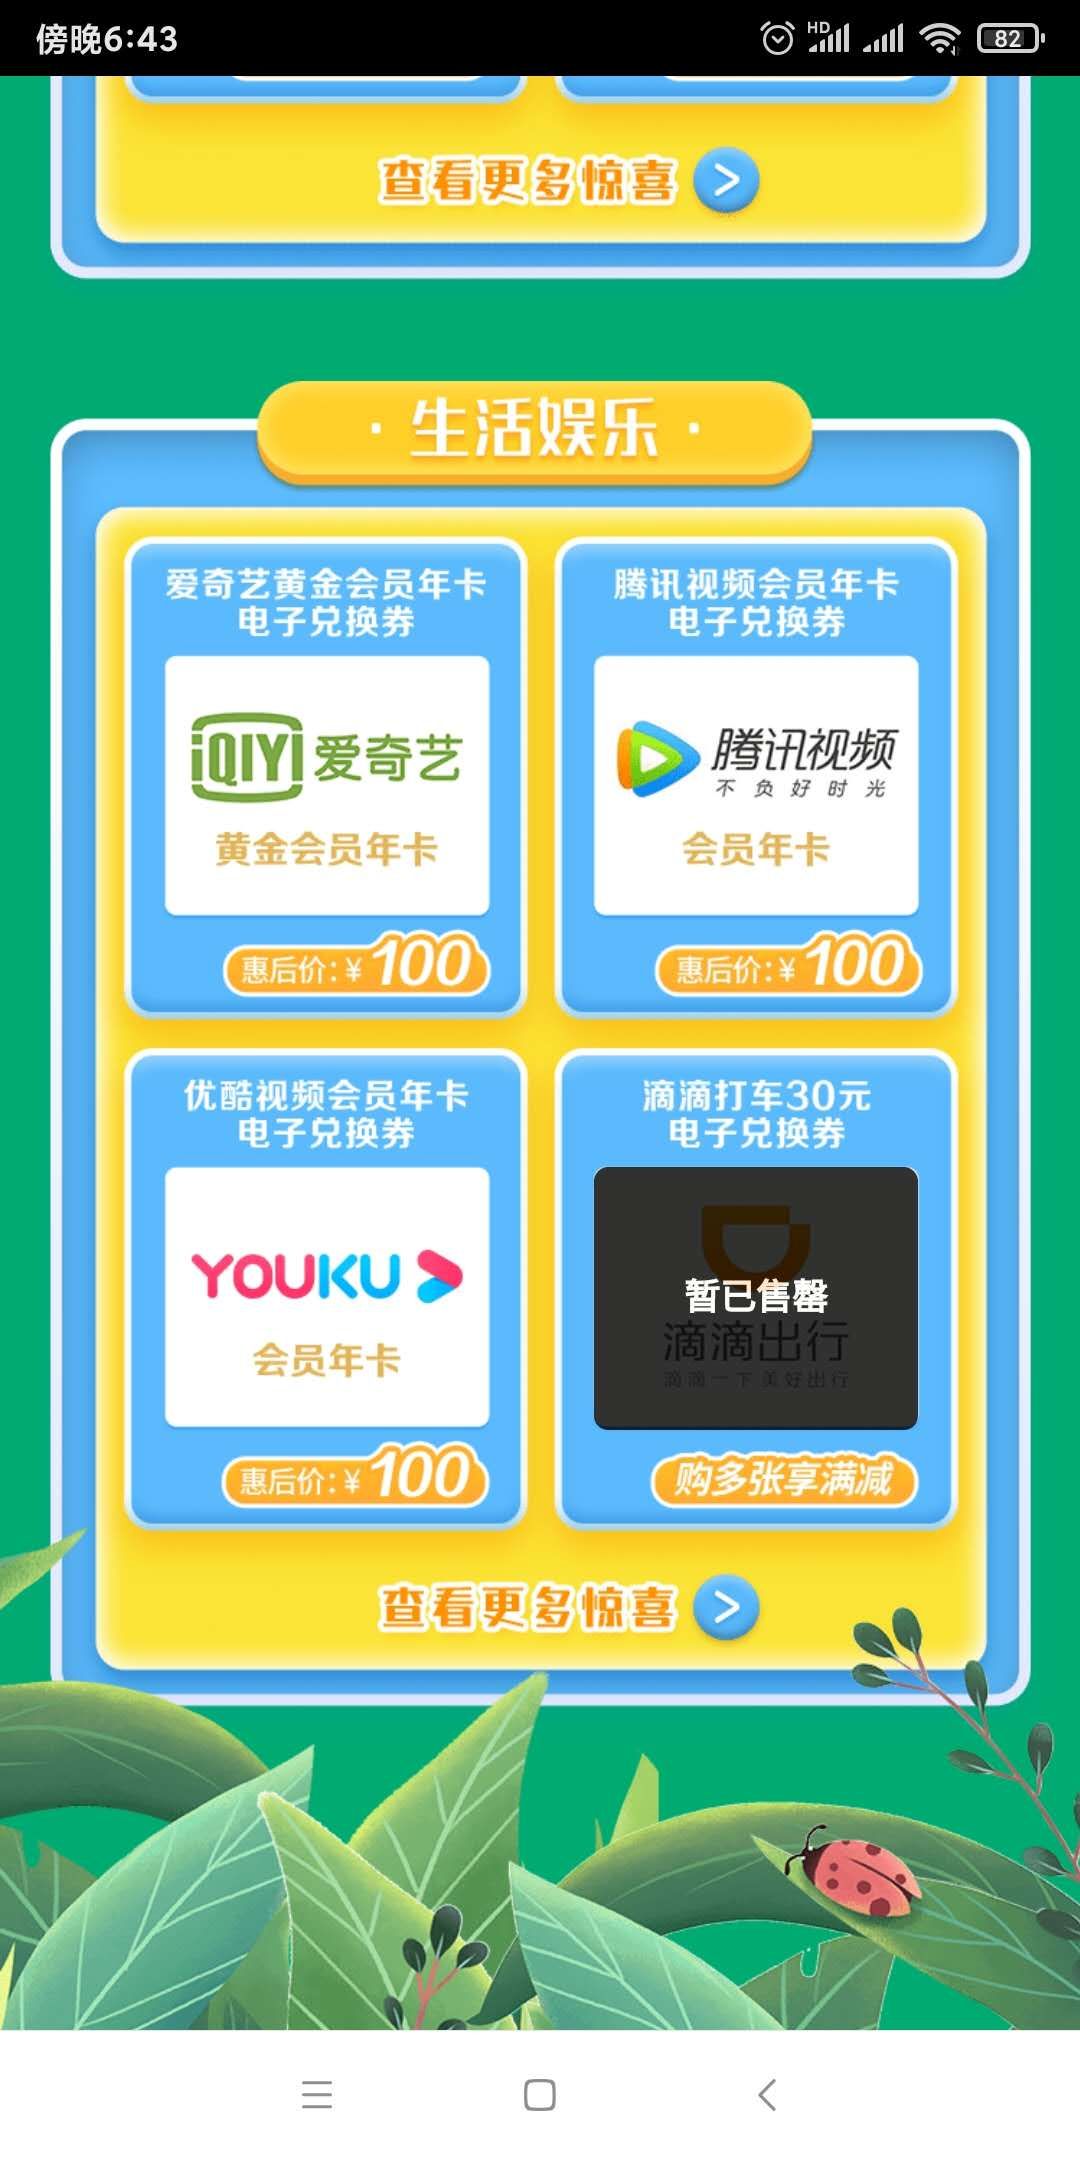 上海工行XYK视频年100-惠小助(52huixz.com)